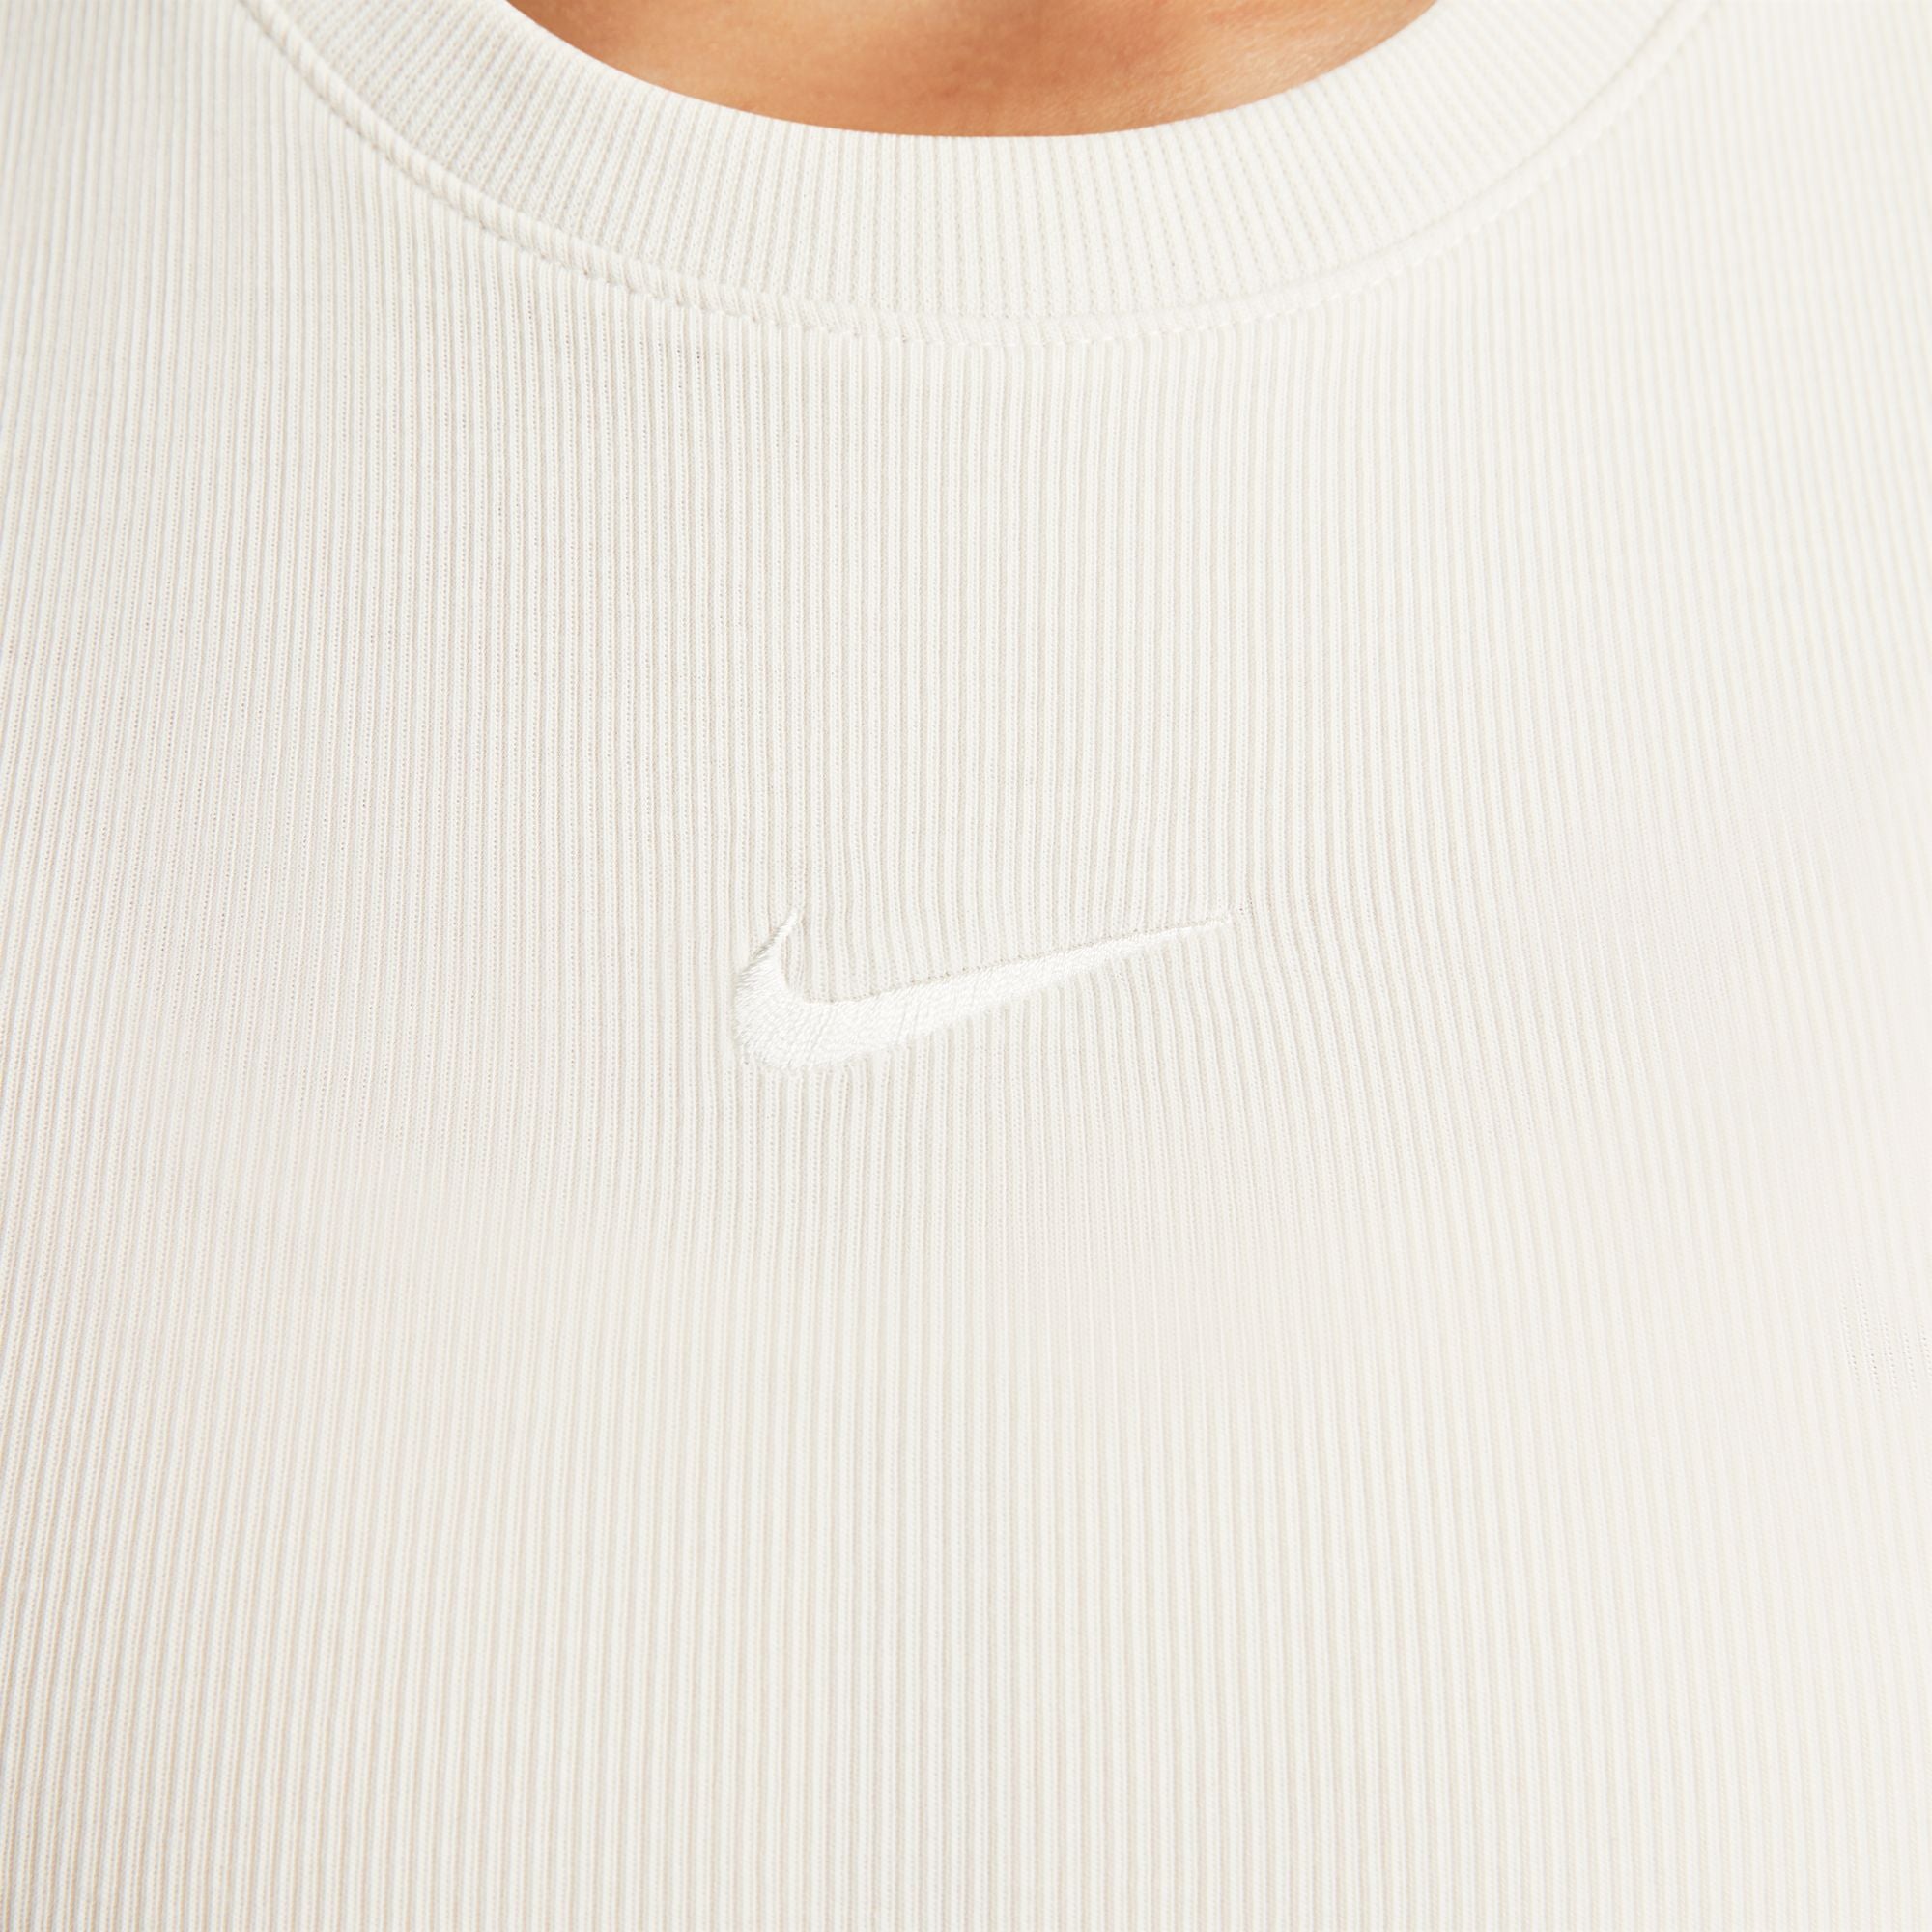 Nike Sportswear Chill Knit Tank Top